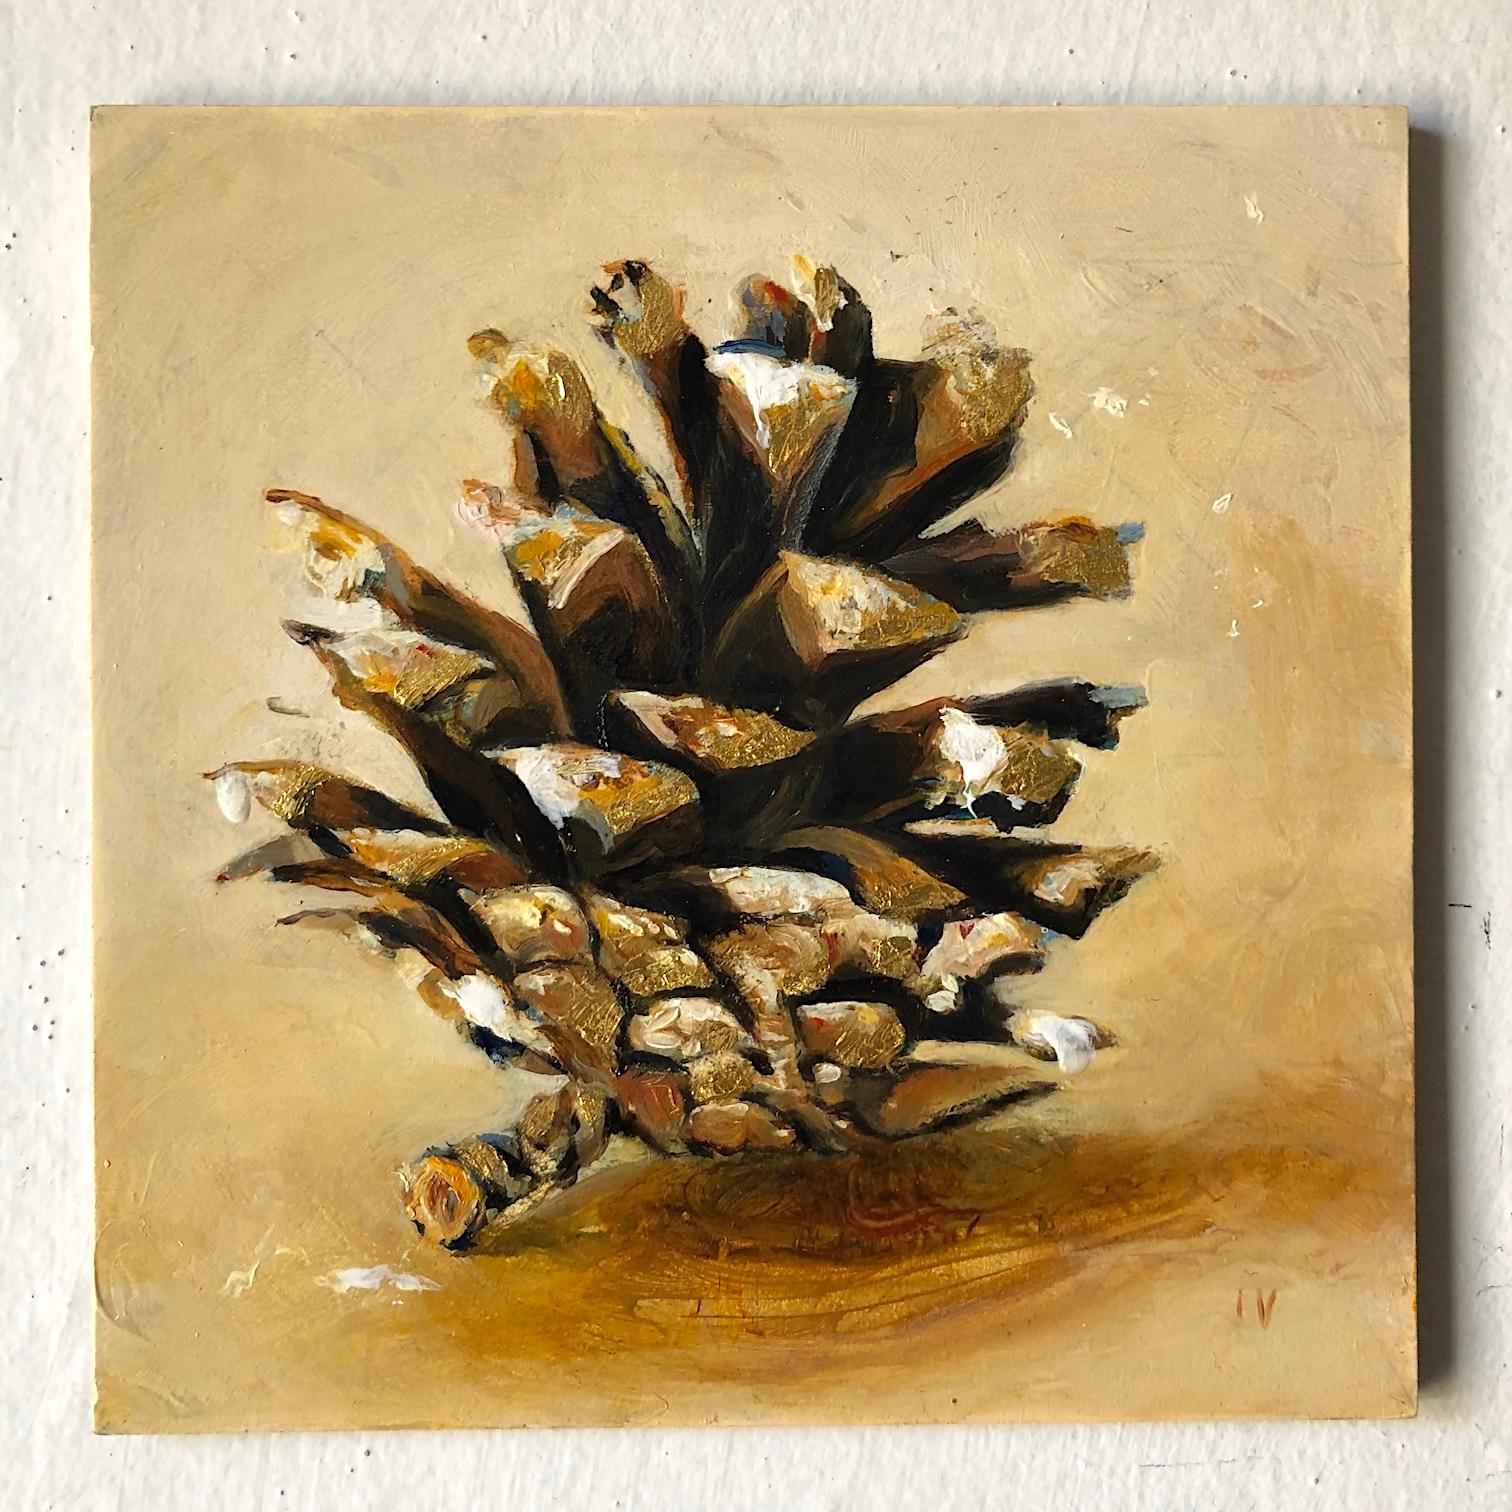 Pinecone n°9 ( Nature morte réaliste contemporaine - Huile de pin avec feuille d'or - Nature morte réaliste) - Contemporain Mixed Media Art par Matthew Hopkins